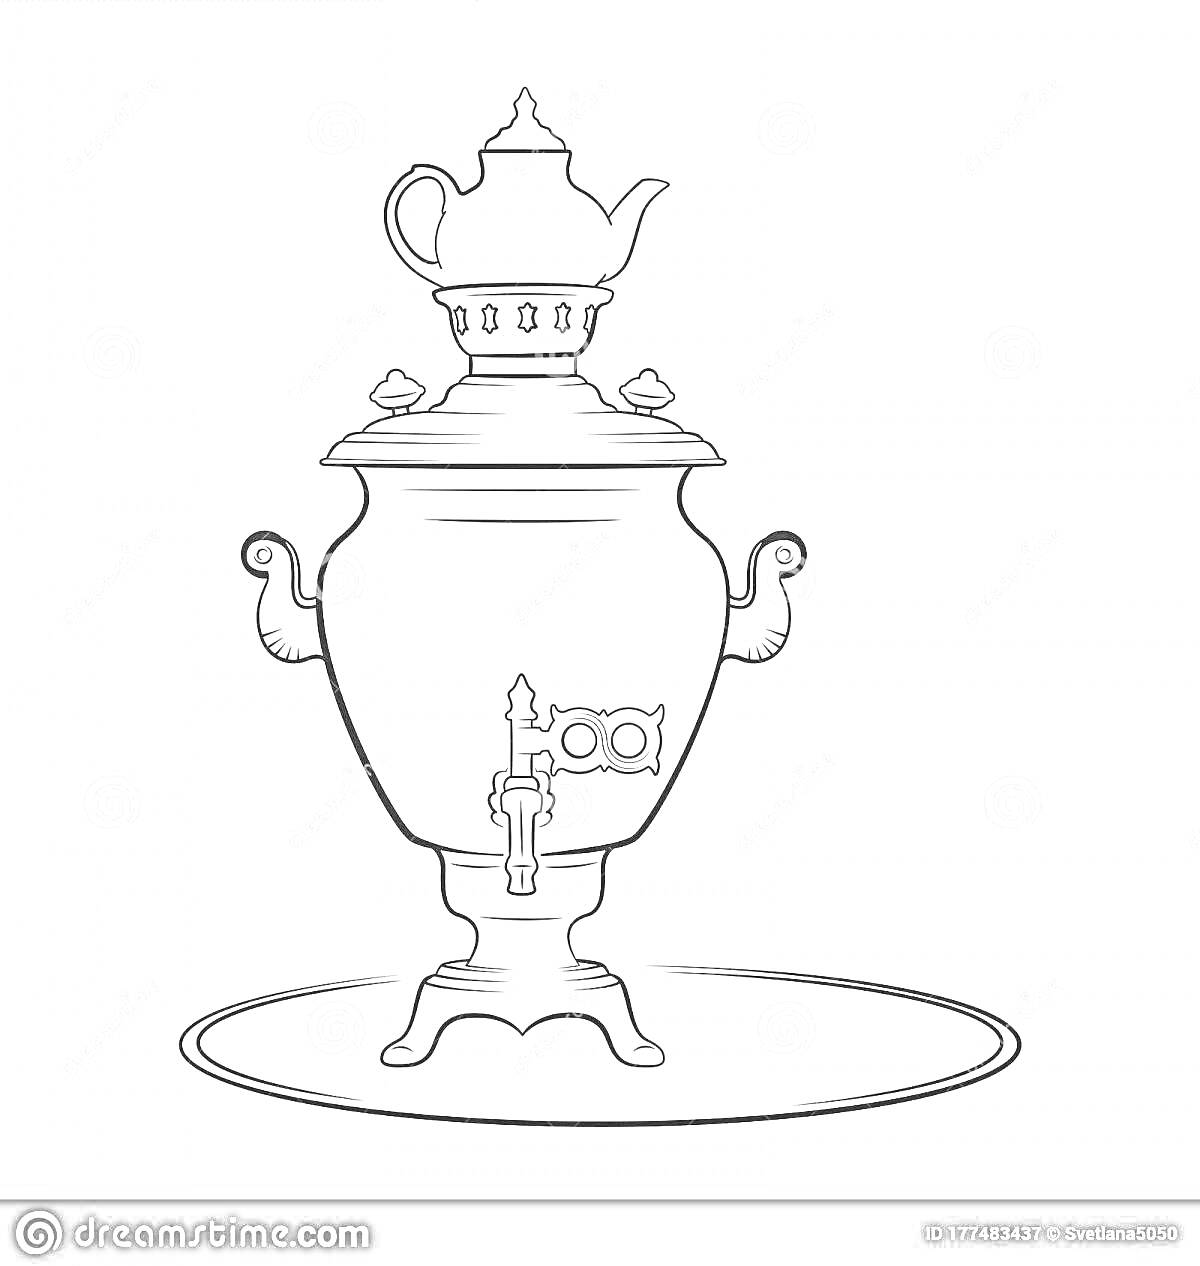 Раскраска Самовар на подносе с чайником и краником